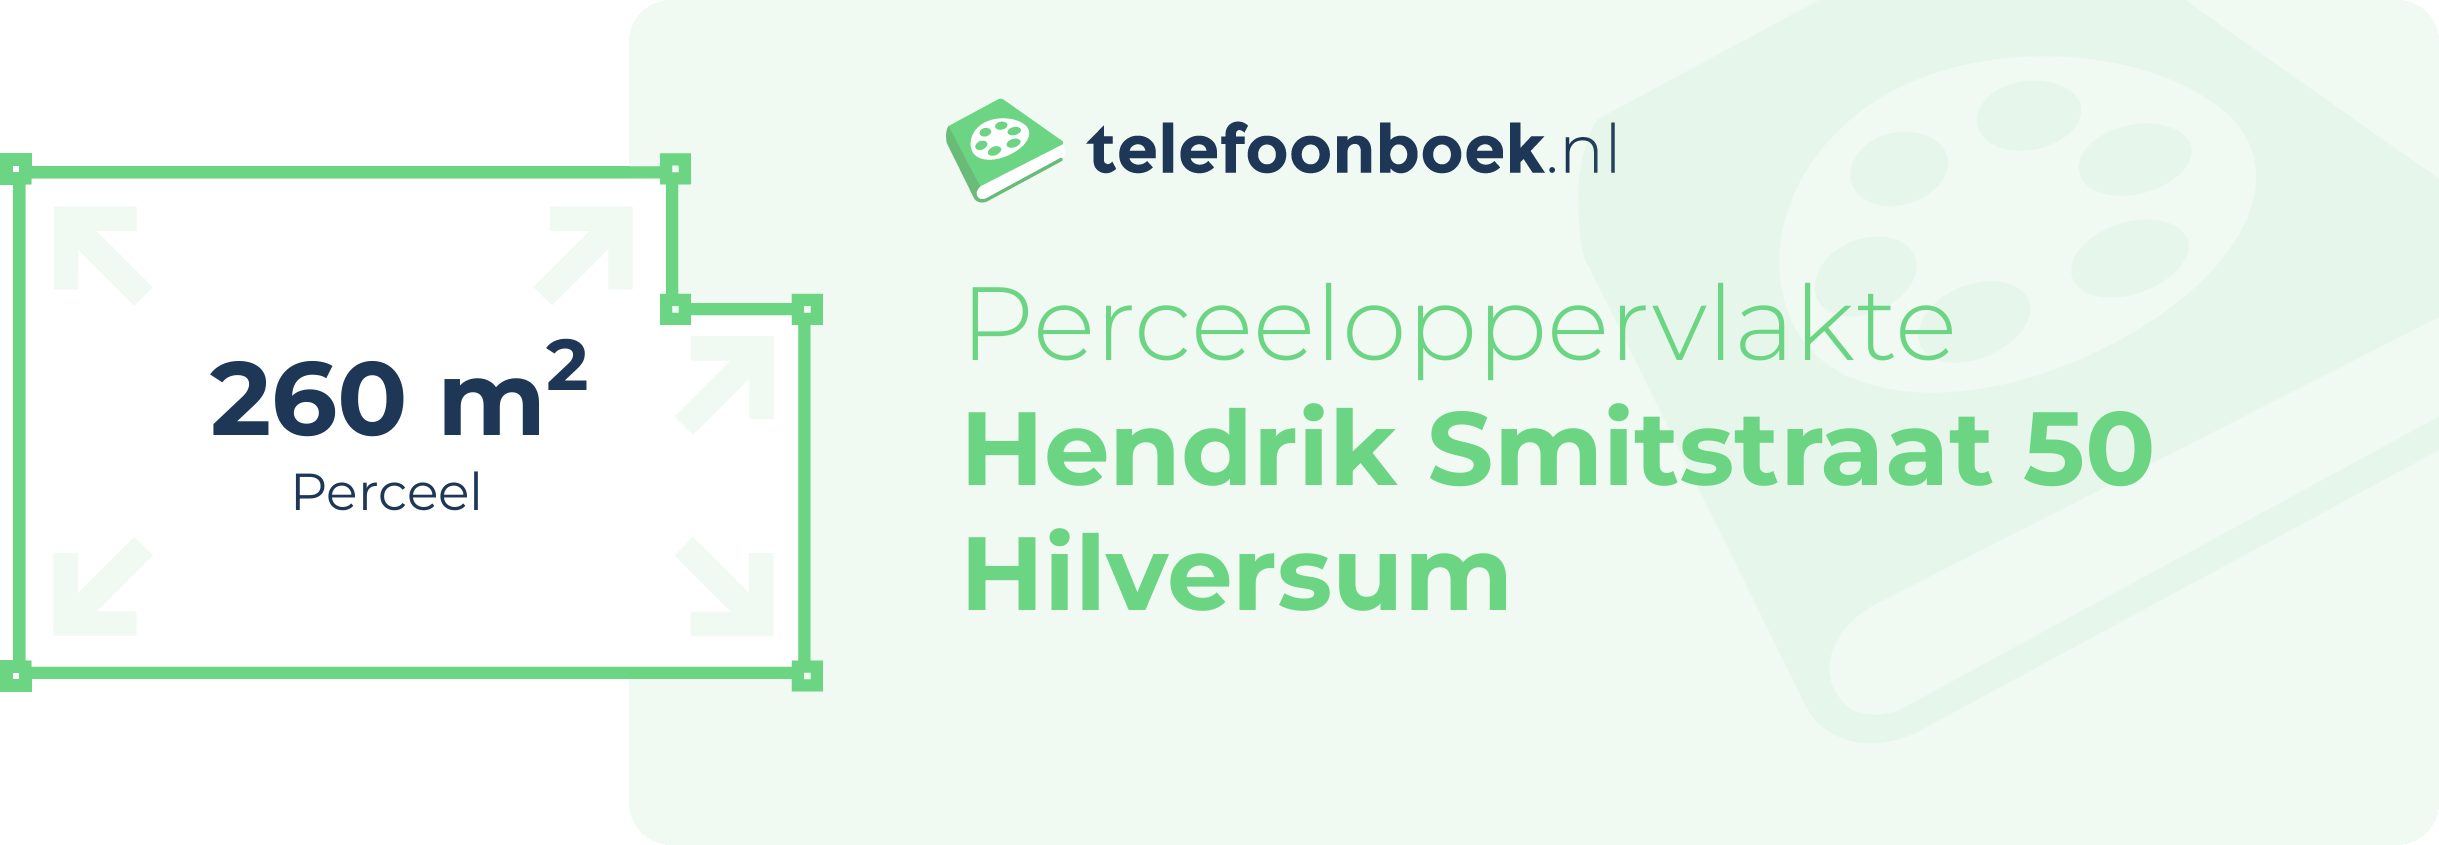 Perceeloppervlakte Hendrik Smitstraat 50 Hilversum